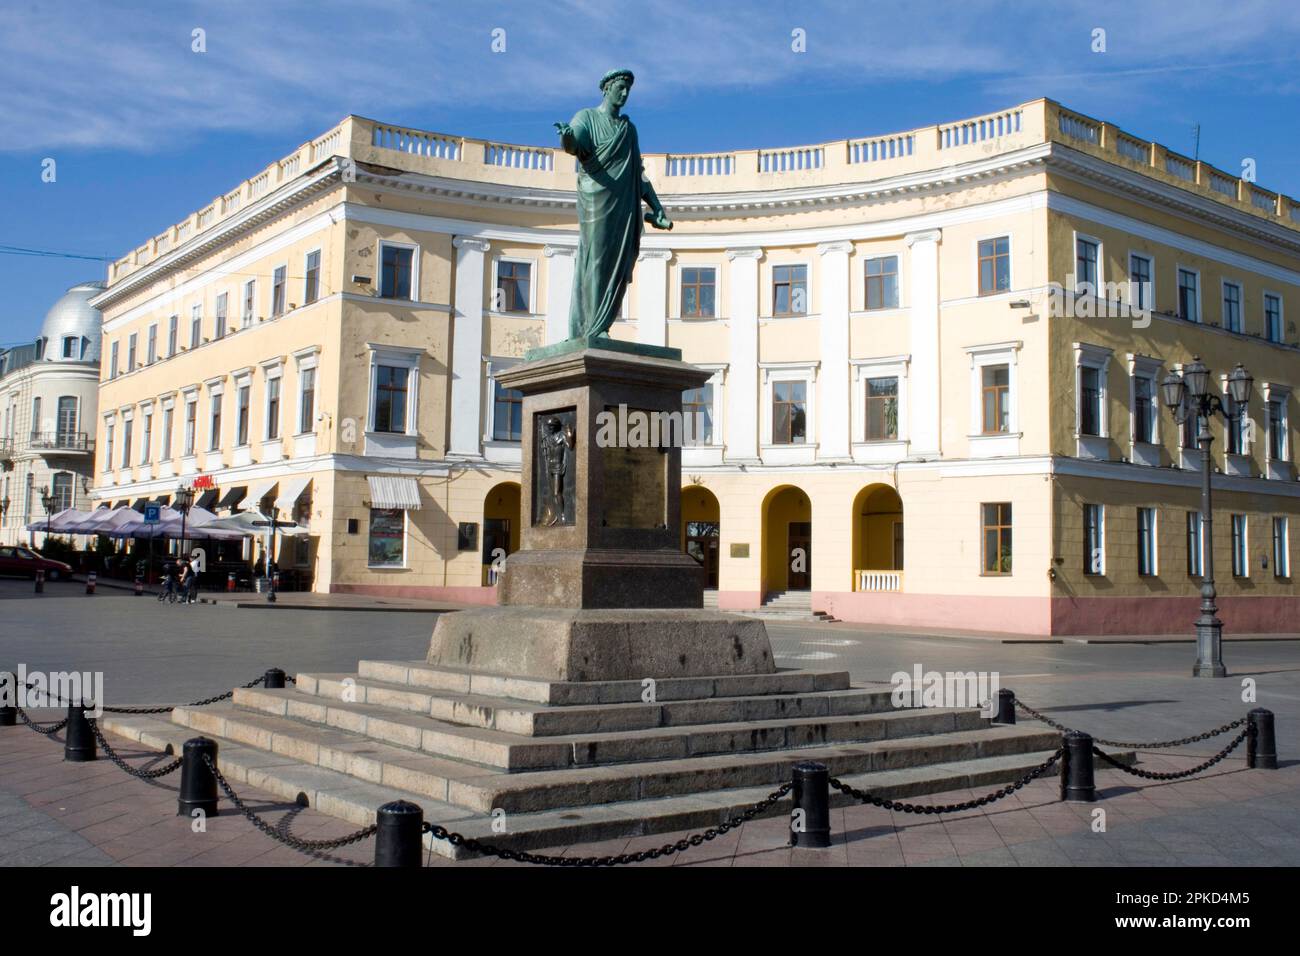 Statue of the Duke de Richelieur, Richelieur Monument, Odessa, Ukraine Stock Photo